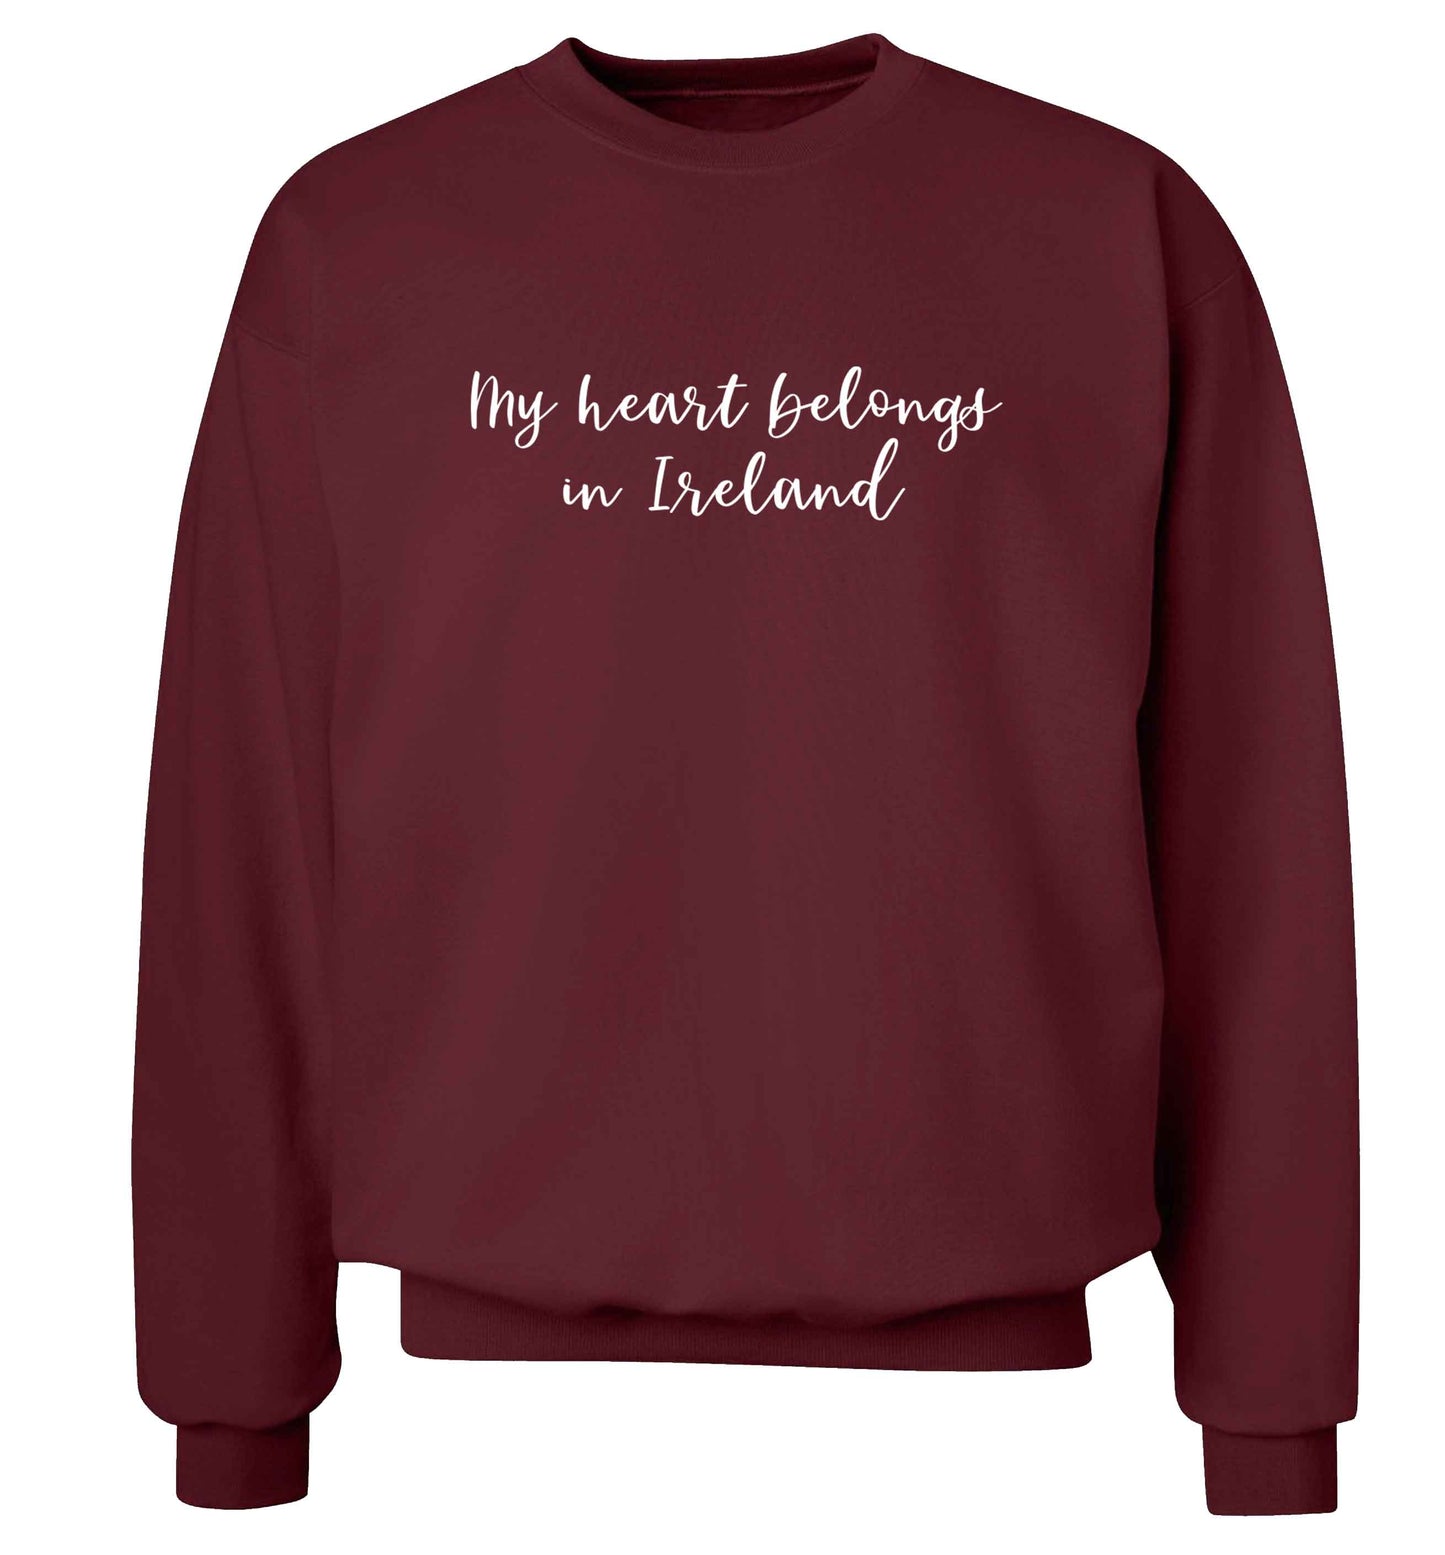 My heart belongs in Ireland adult's unisex maroon sweater 2XL